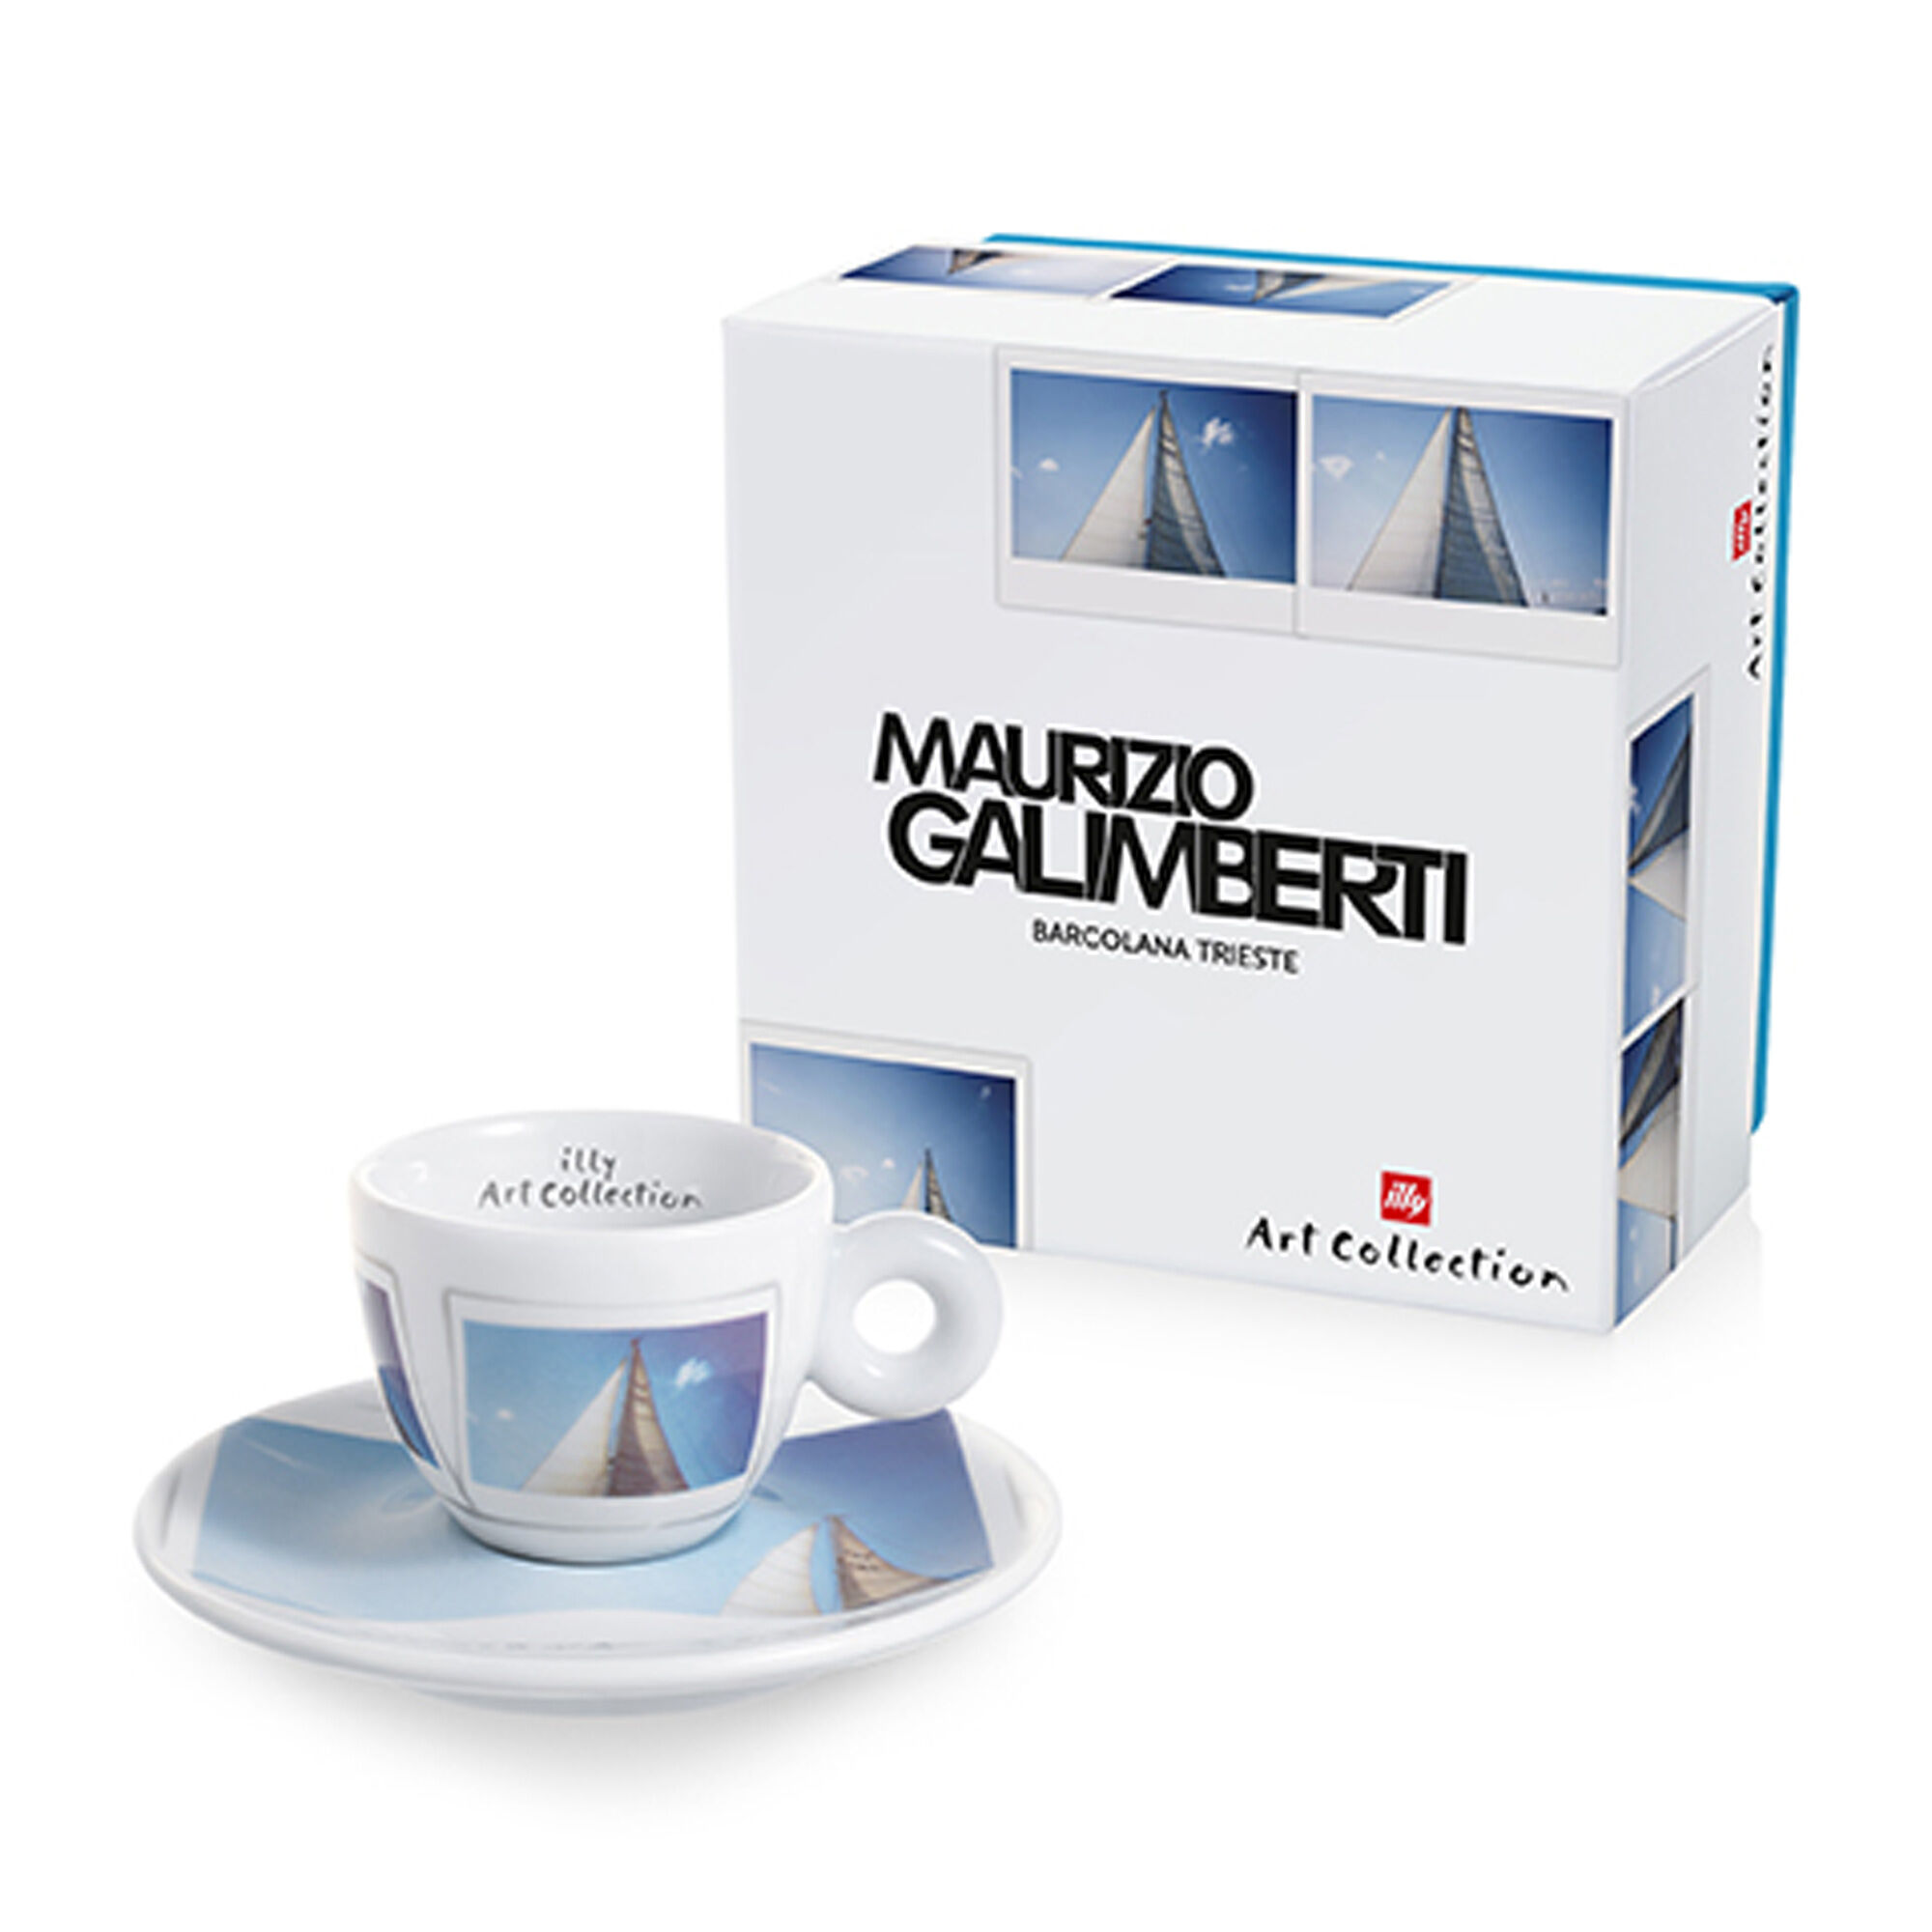 Maurizio Galimberti - 1 taza de café espresso